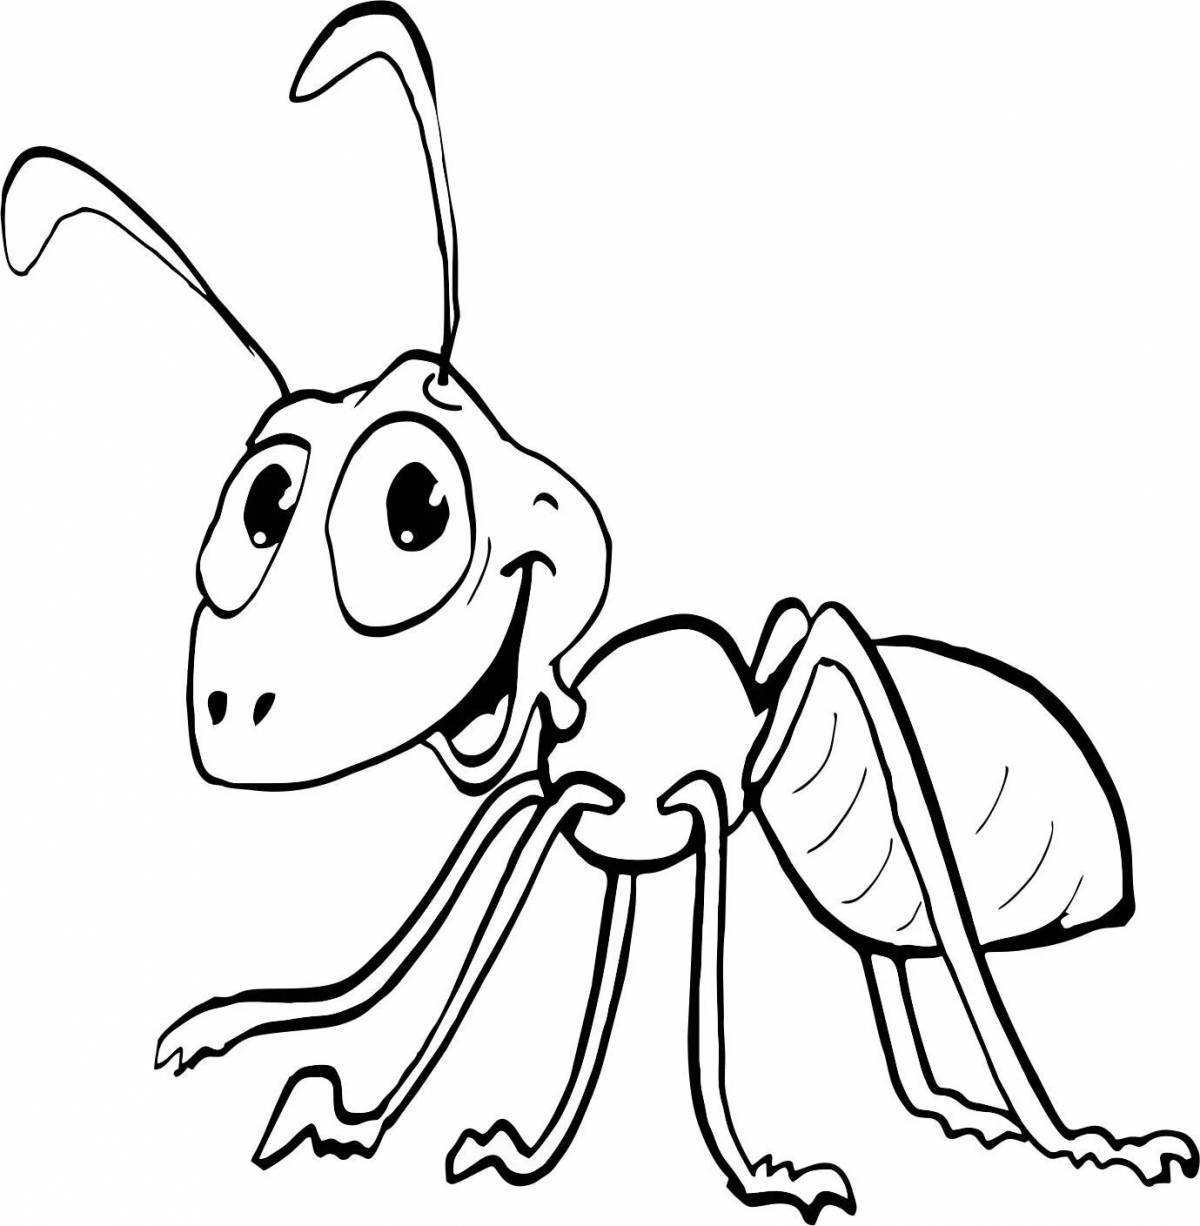 Сообщество иллюстраторов | Иллюстрация муравей. | Муравьи, Иллюстрации, Животные